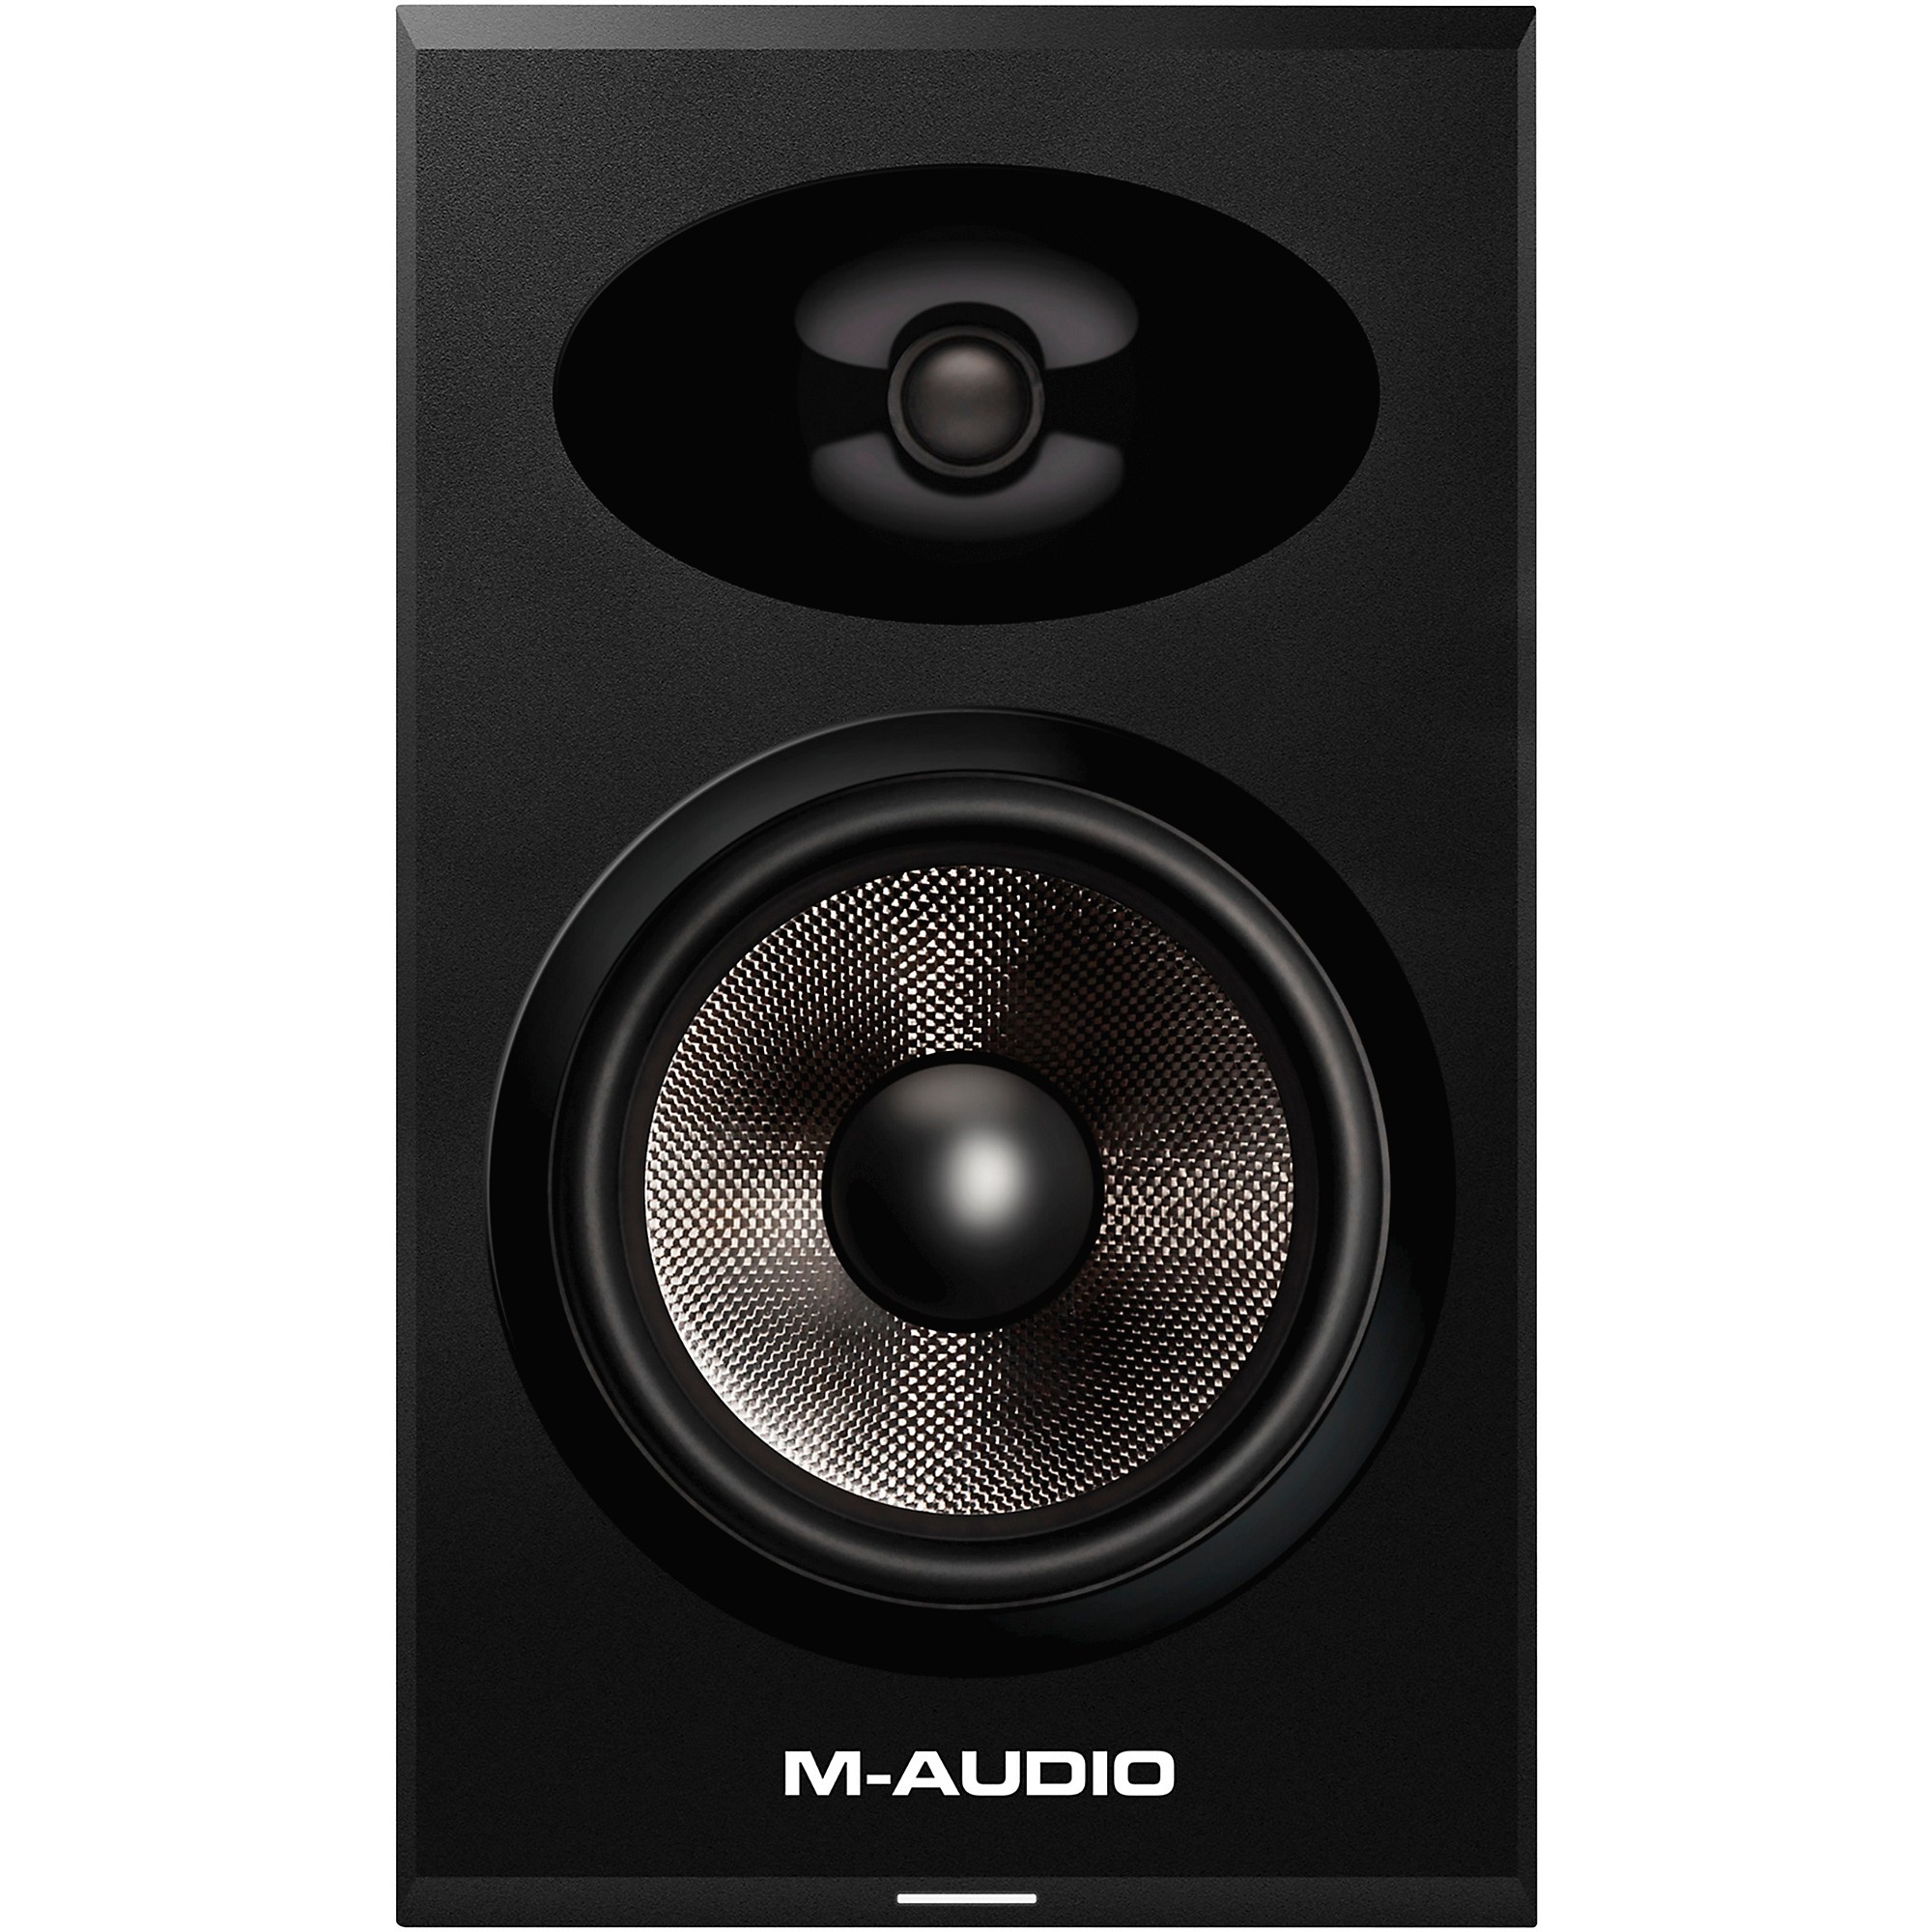 Audio bx. M Audio bx8. M-Audio bx8 d2. Динамик от m-Audio bx8a. M Audio bx5 АЧХ.